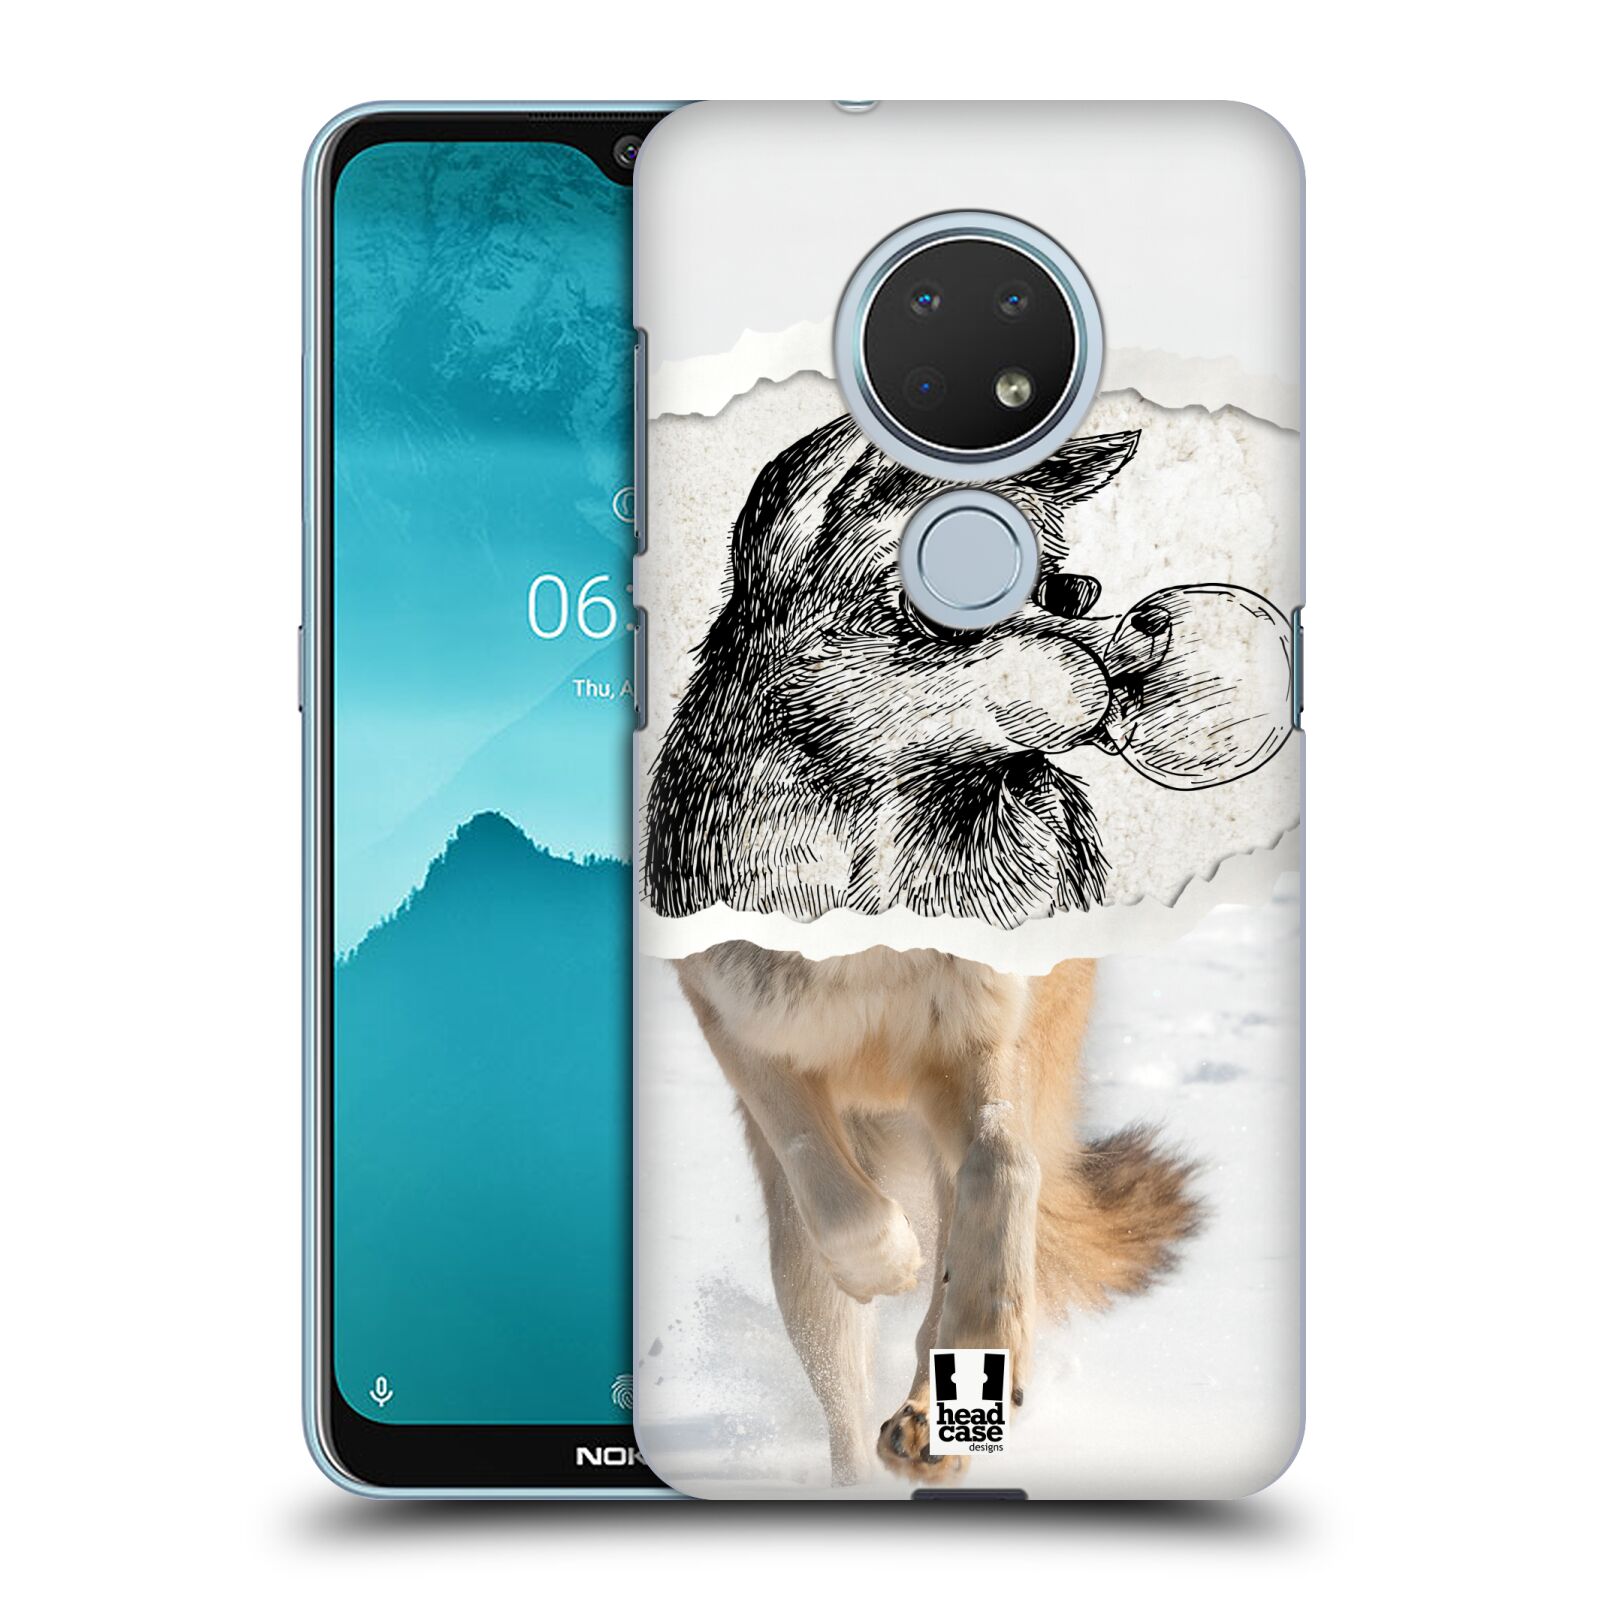 Pouzdro na mobil Nokia 6.2 - HEAD CASE - vzor zvířata koláž vlk pohodář